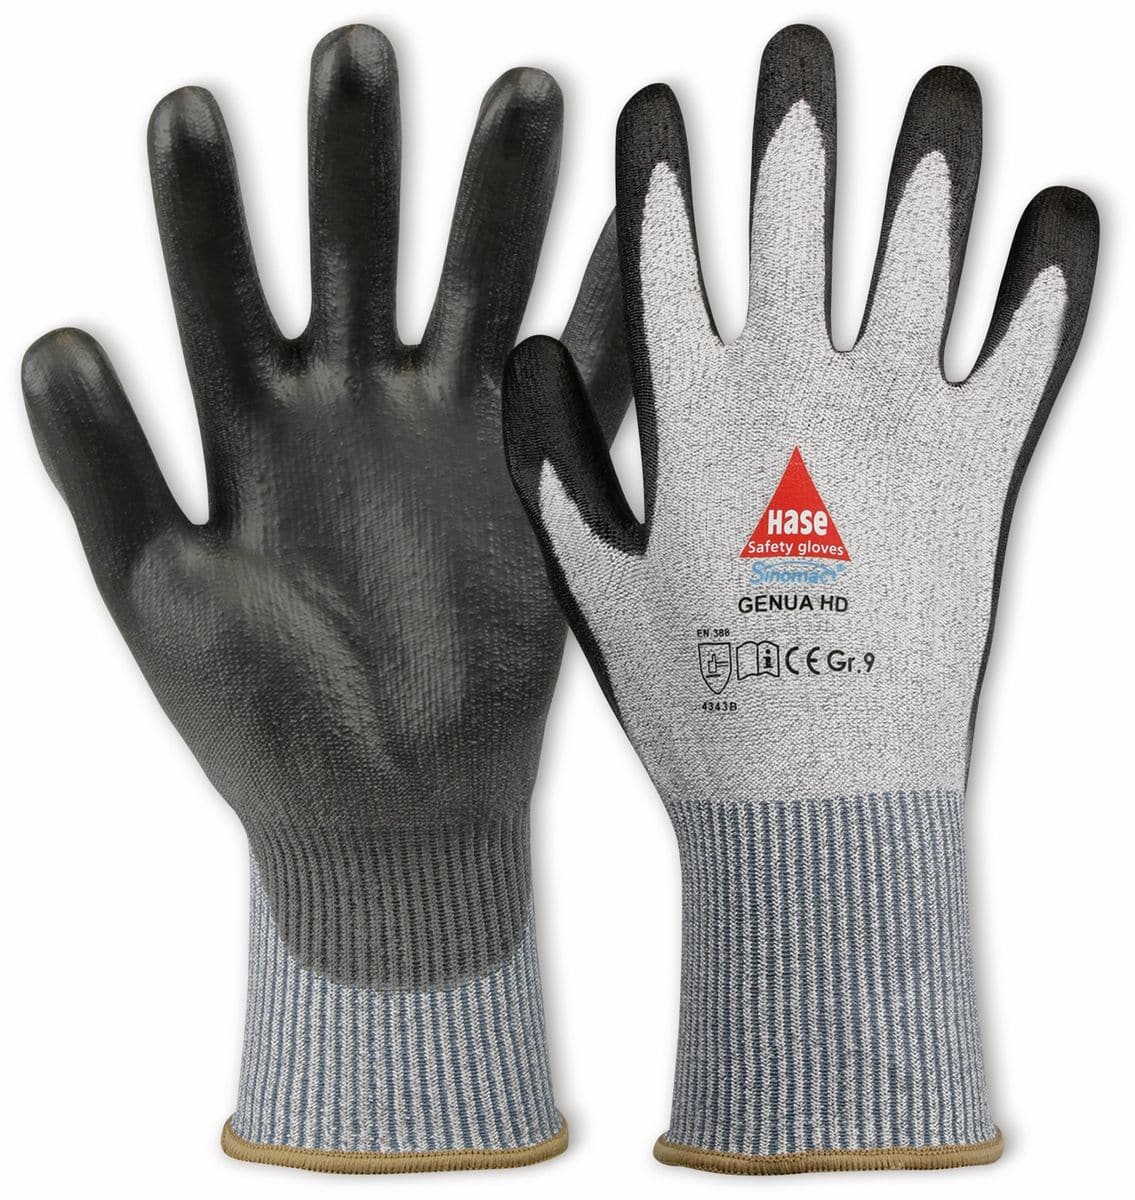 HASE SAFETY GLOVES Schnittschutz-Arbeitshandschuhe Genua HD, Größe 8 von Hase Safety gloves